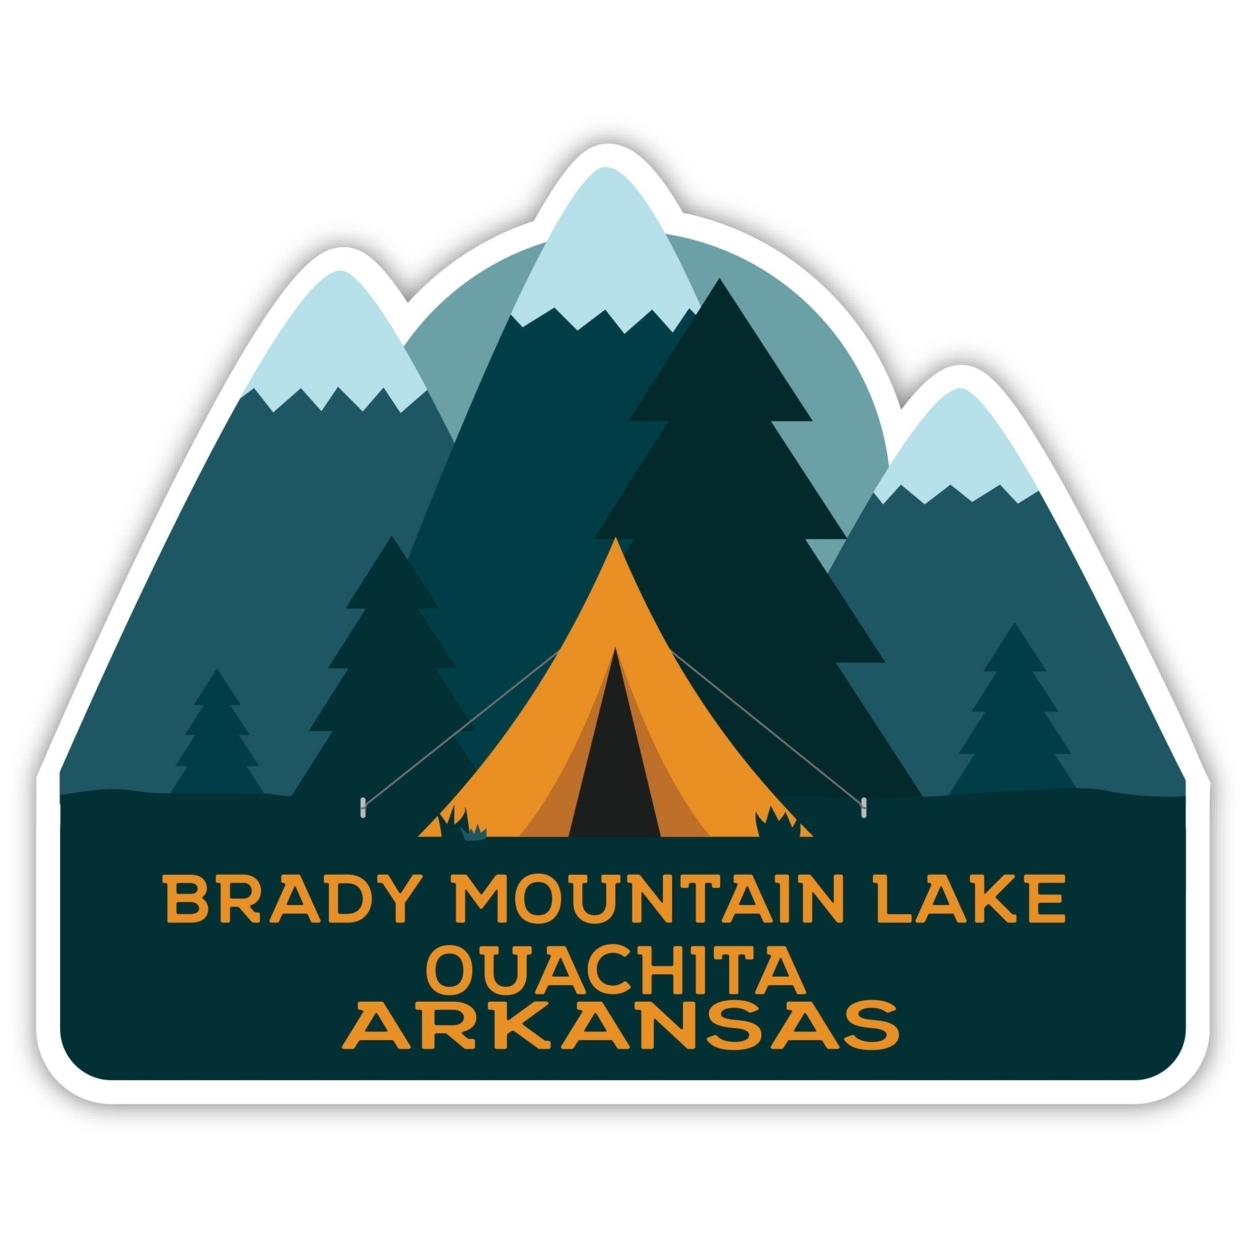 Brady Mountain Lake Ouachita Arkansas Souvenir Decorative Stickers (Choose Theme And Size) - Single Unit, 6-Inch, Tent